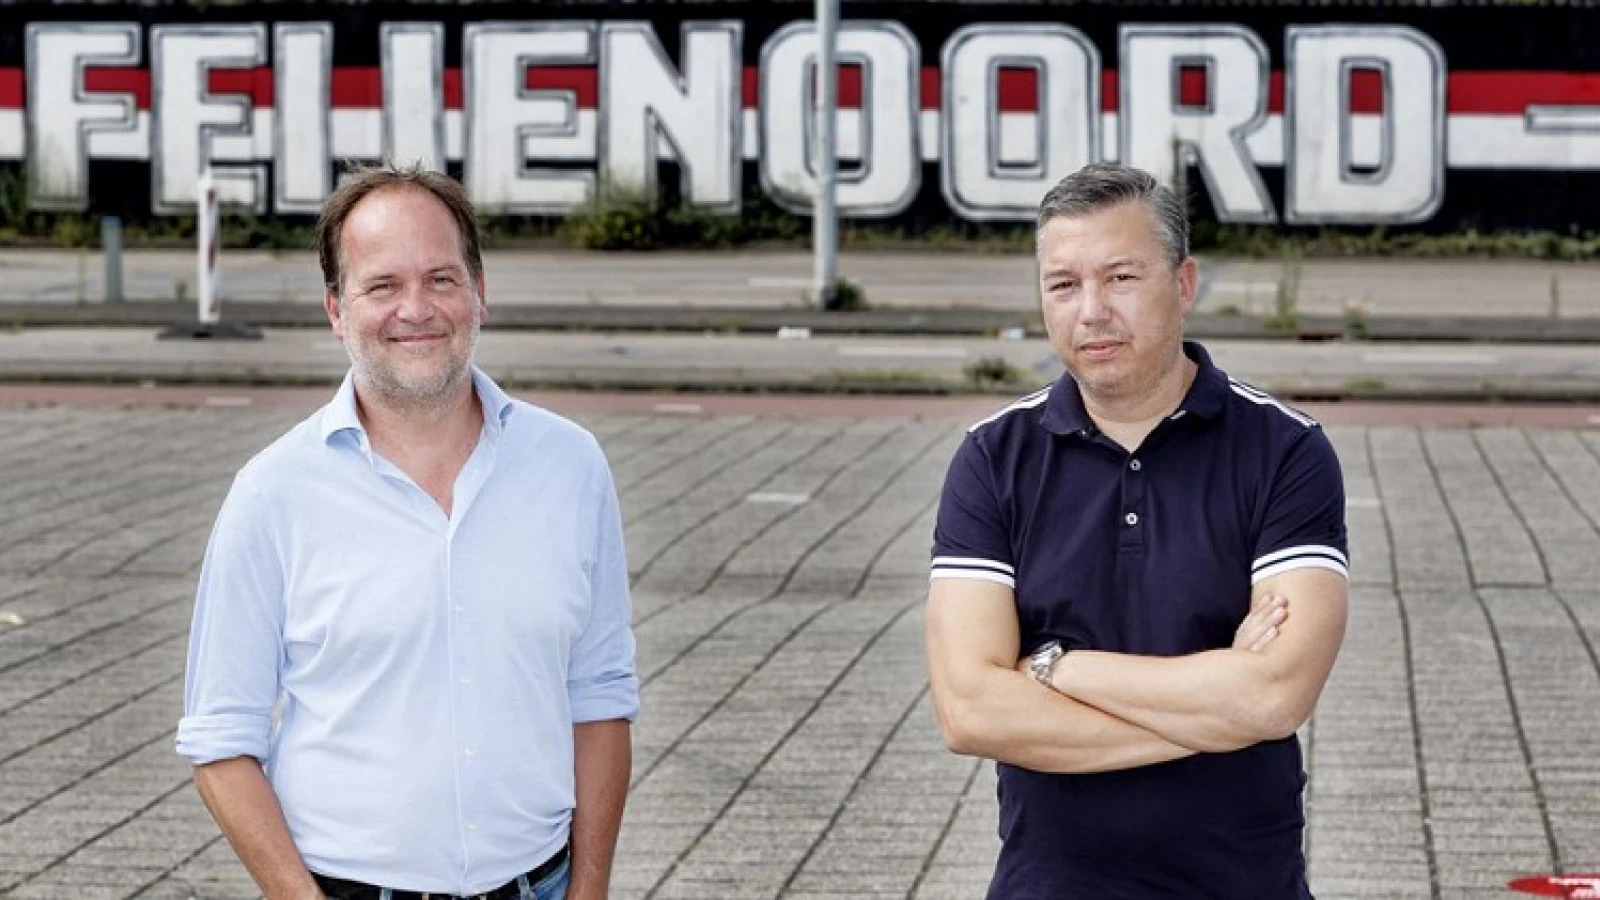 Krabbendam looft 'Beste trainer van de eredivisie' : 'Daar moet je als trainer op beoordeeld worden'